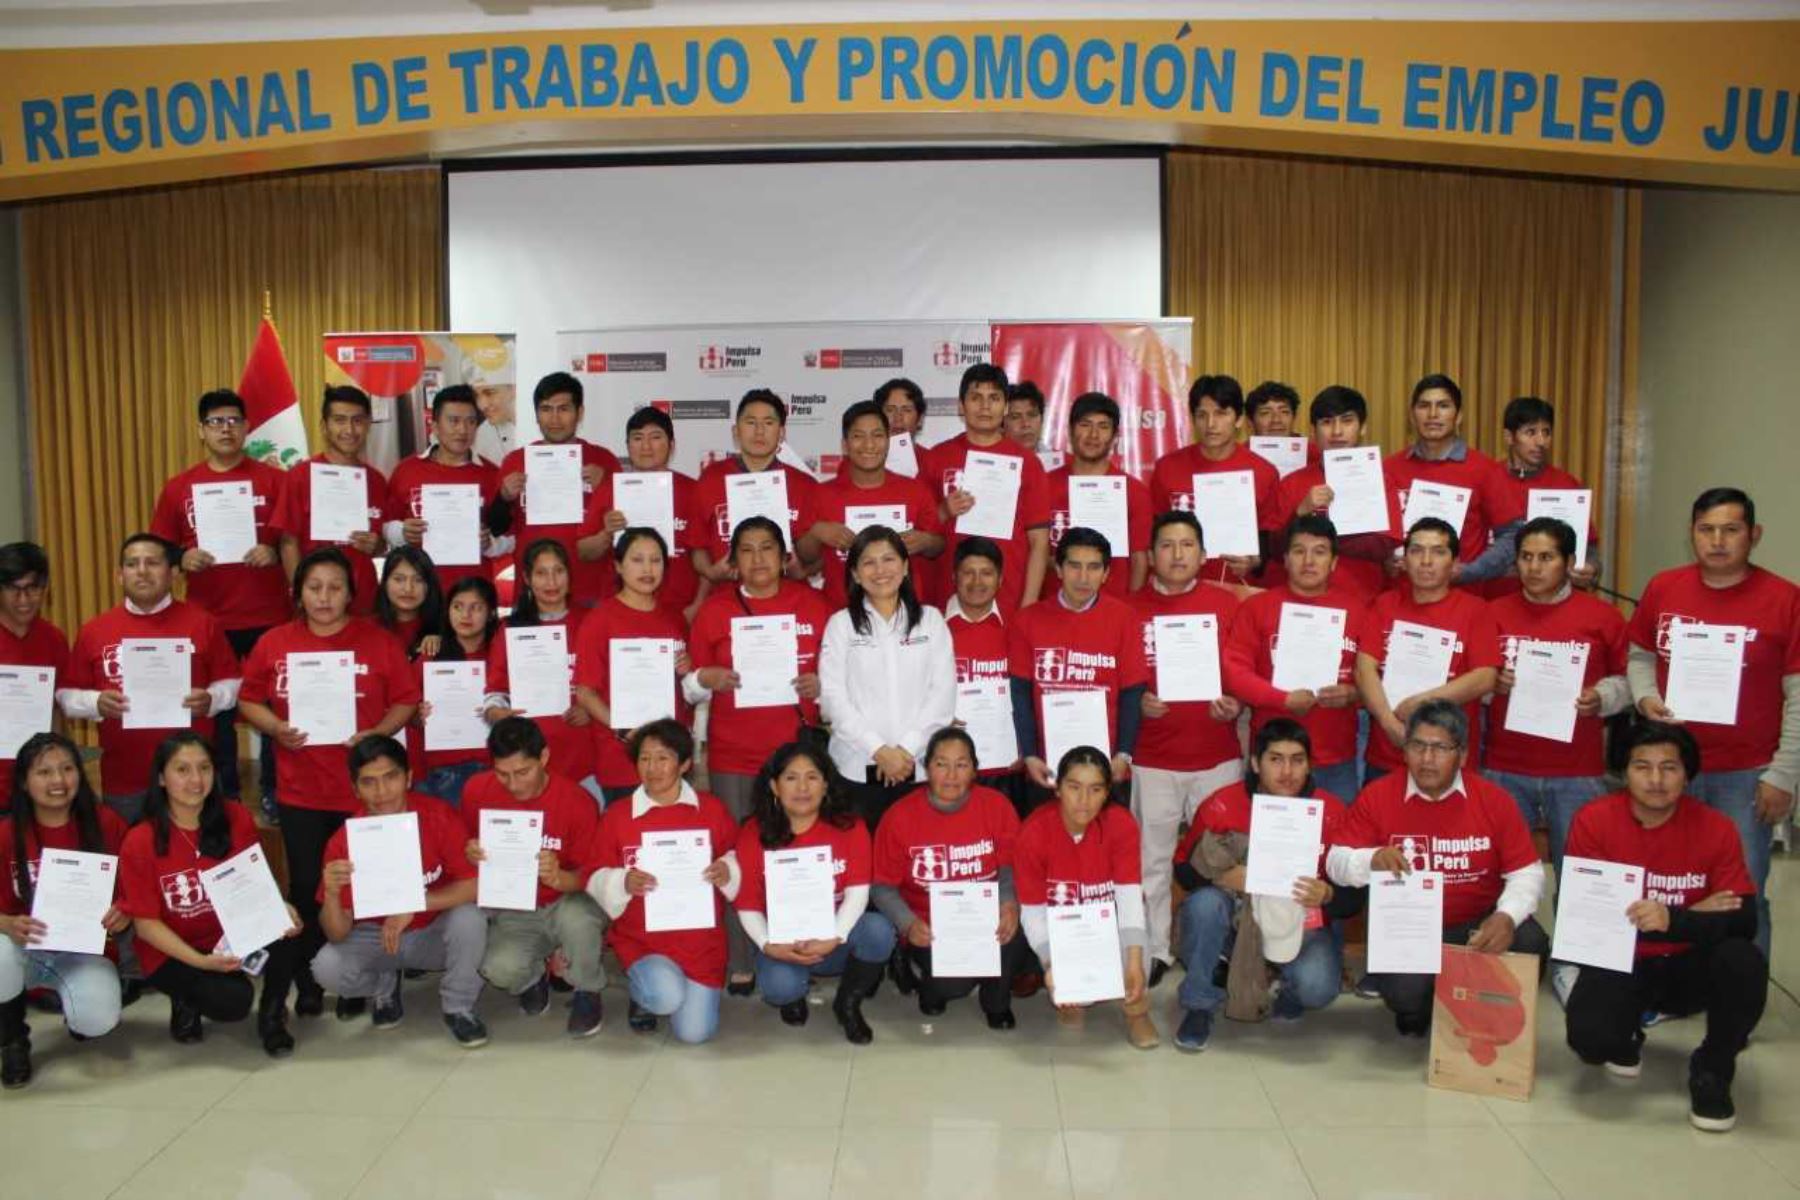 El Ministerio de Trabajo y Promoción del Empleo (MTPE), a través de su programa Impulsa Perú, certificó las competencias laborales de 60 panaderos, entre ellos 15 mujeres, de la región Junín.